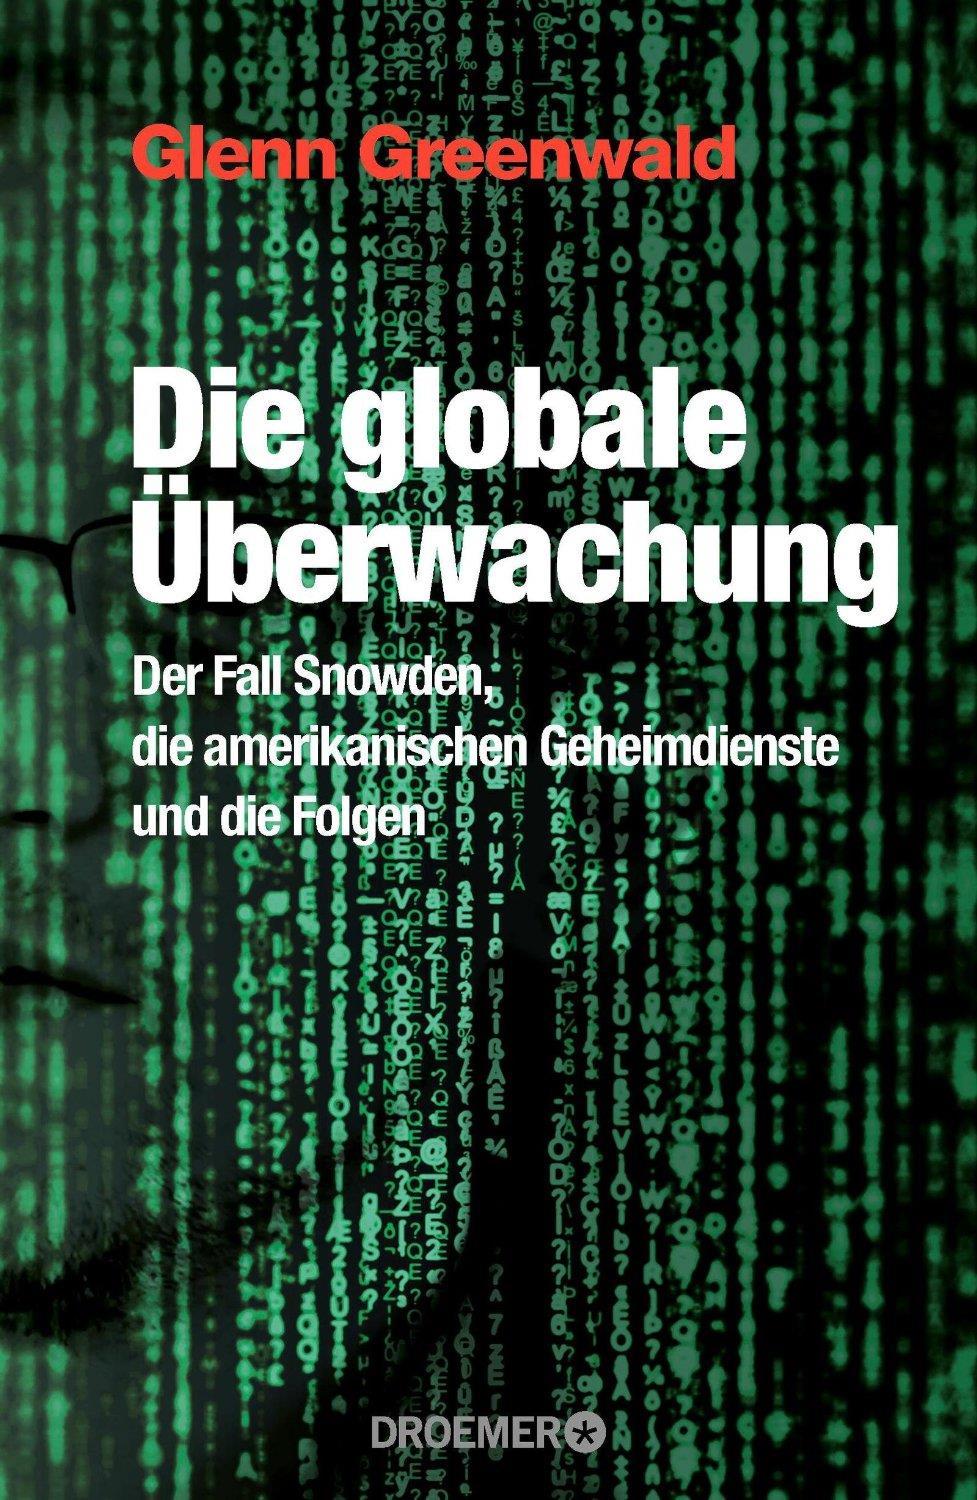 Die globale Überwachung : der Fall Snowden, die amerikanischen Geheimdienste und die Folgen. Von Glenn Greenwald. München, 2014.